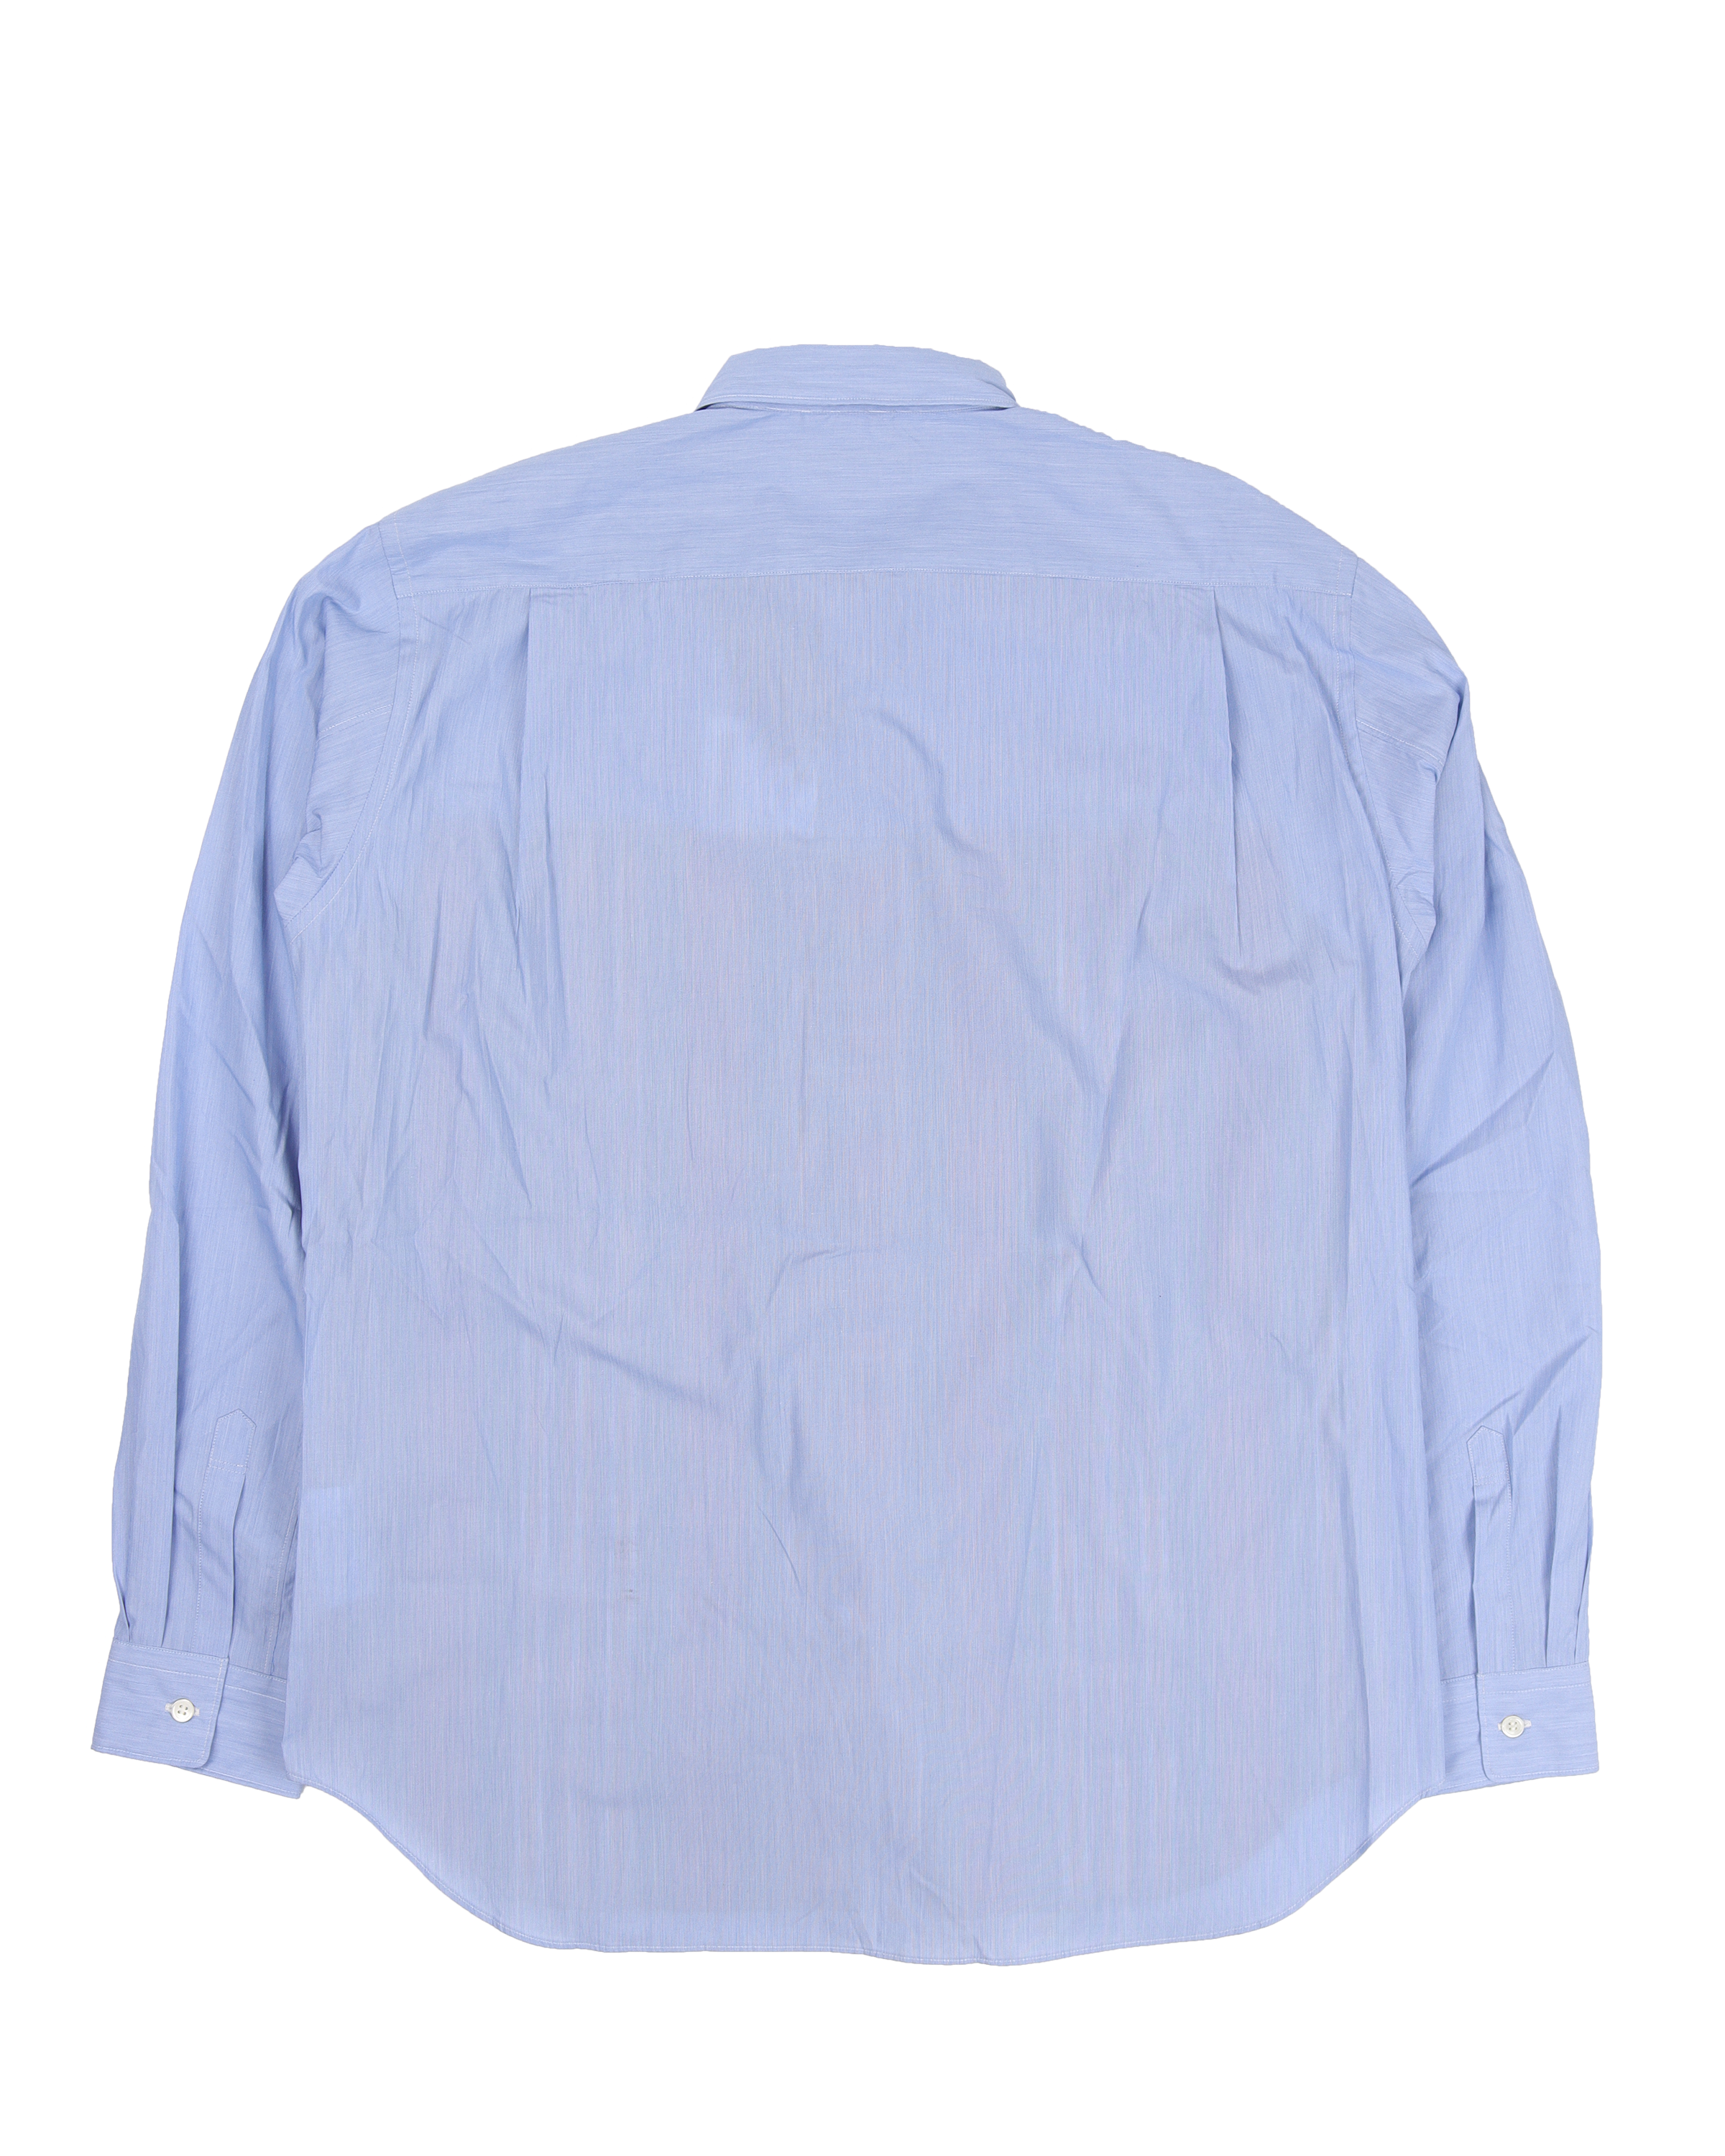 Plaid Striped Button Shirt